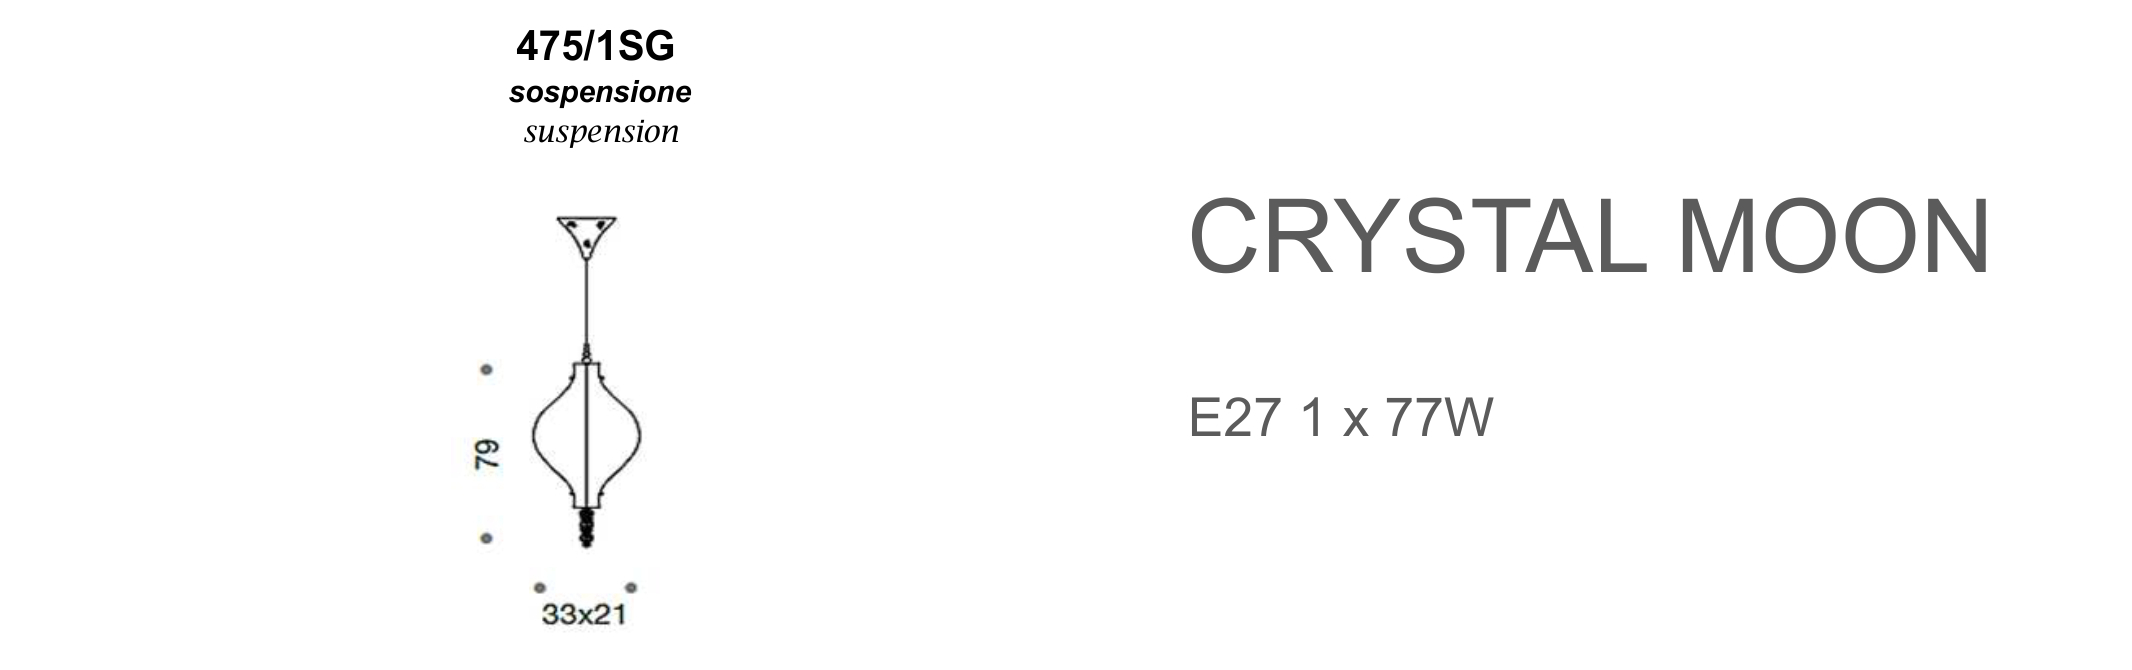 Crystal Moon 475/1SG